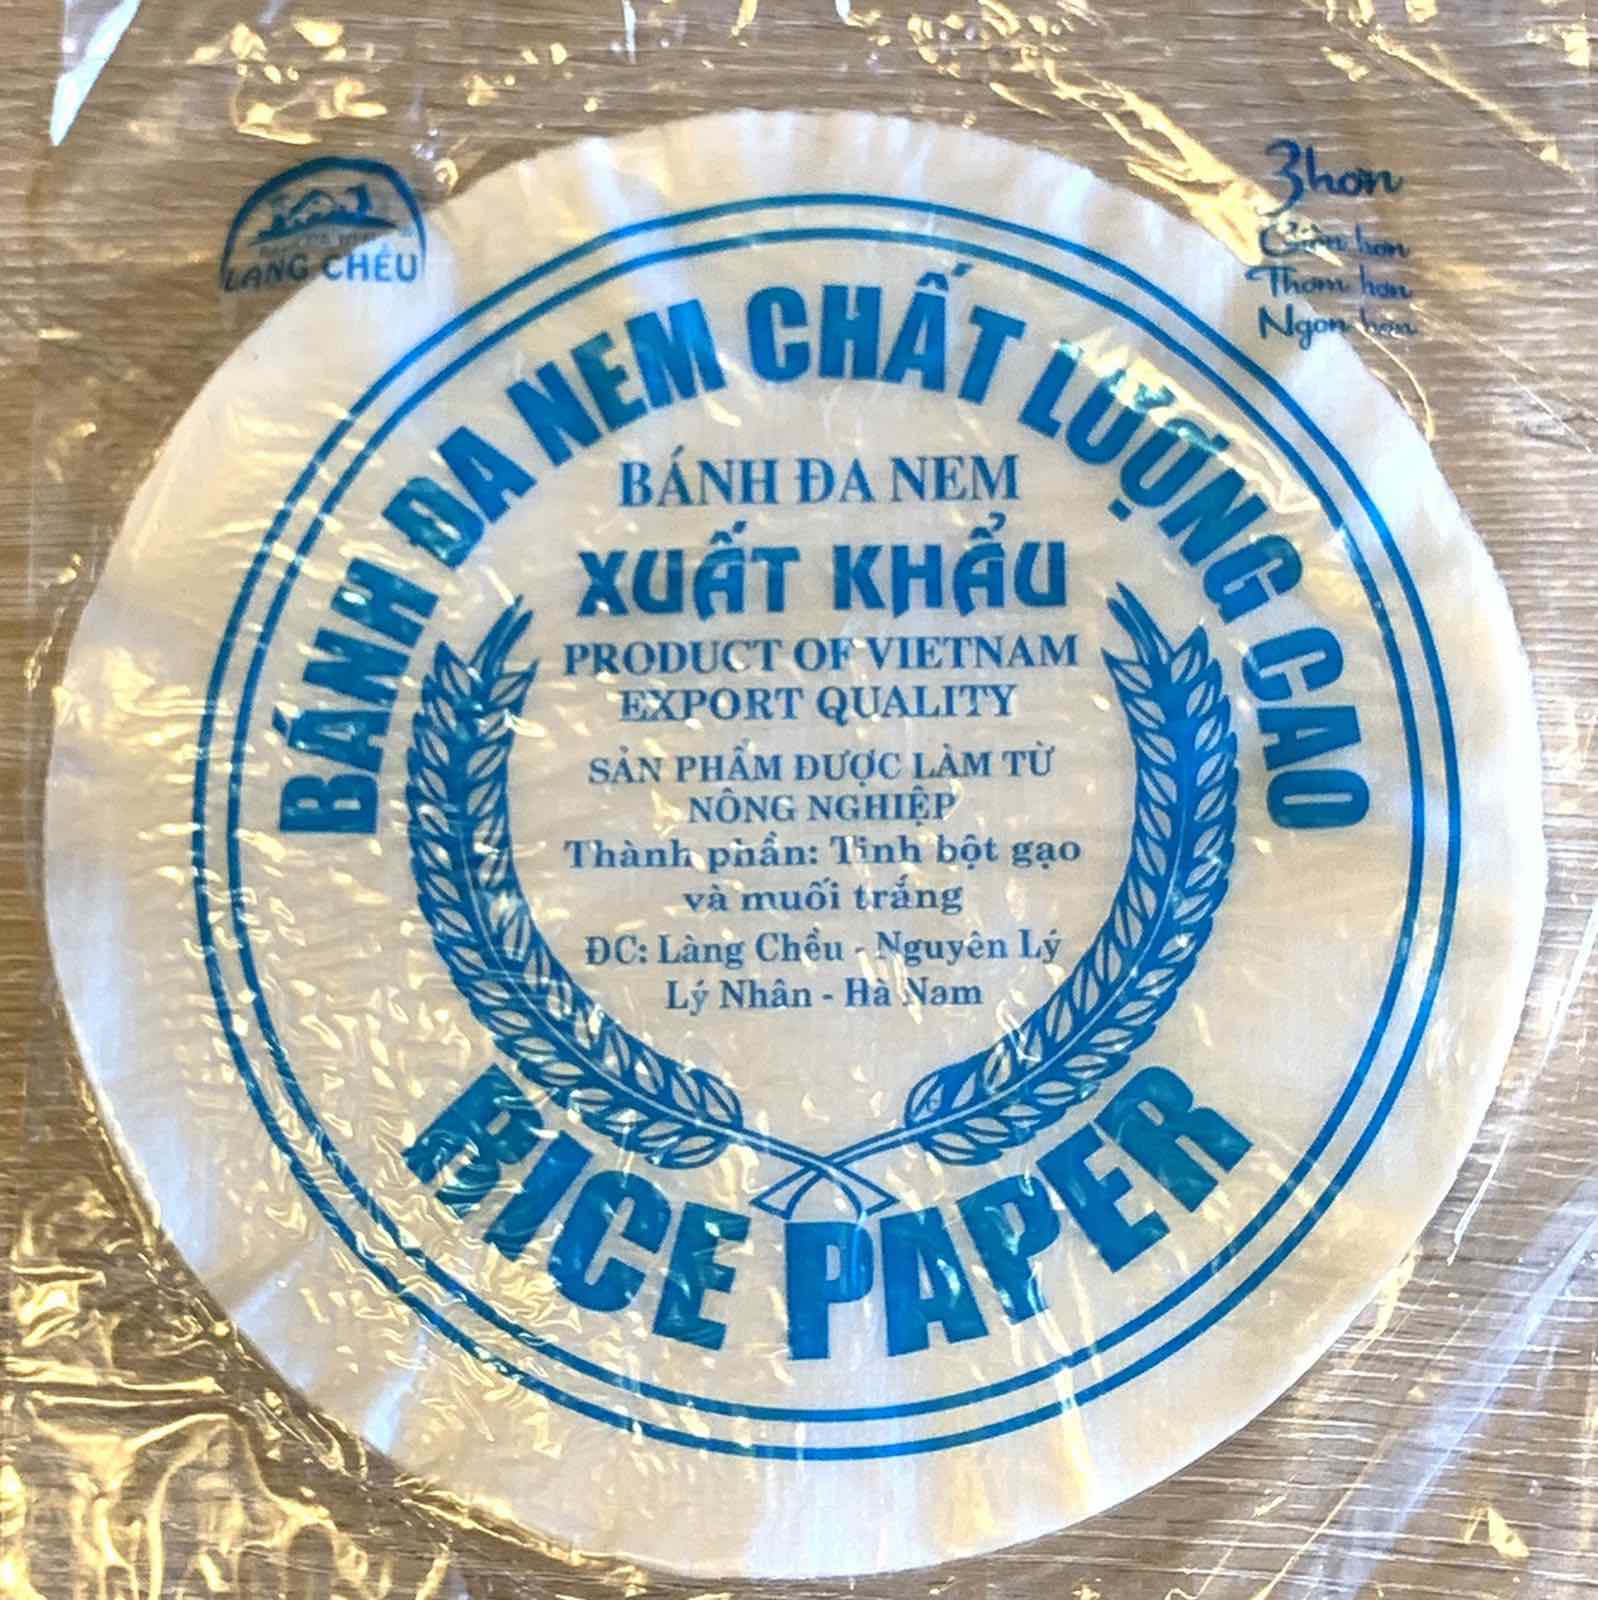 Mua bánh đa nem làng Chều tại Cần Thơ uy tín 